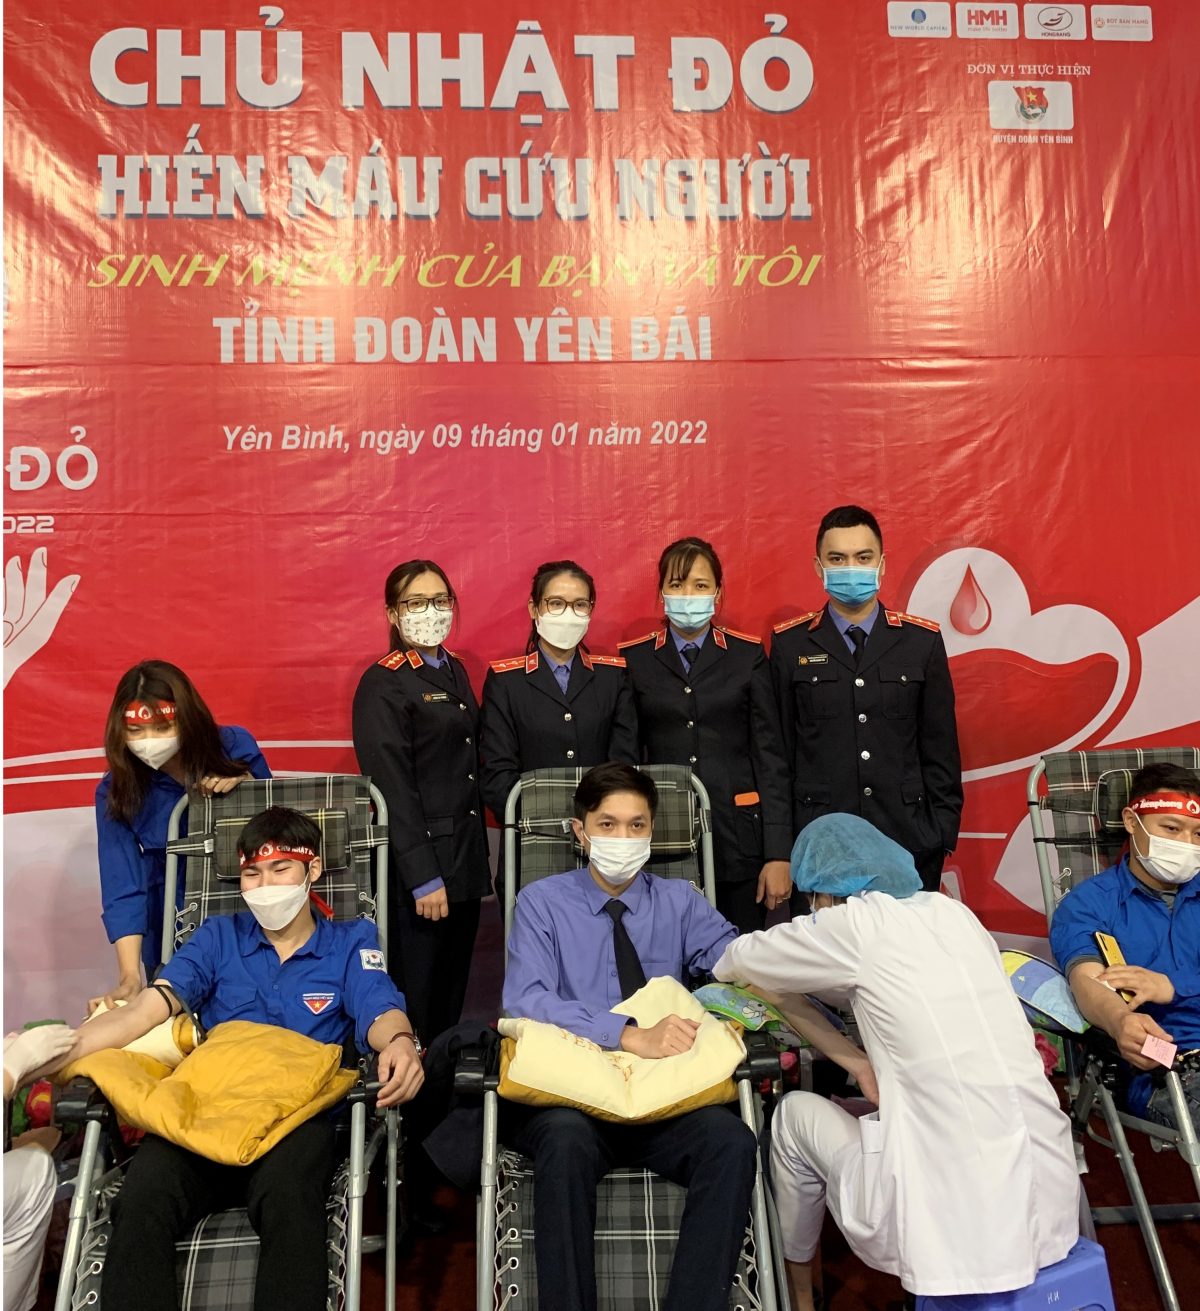 Đoàn thanh niên VKSND huyện Yên Bình tham gia hiến máu tình nguyện hưởng ứng chương trình “Ngày chủ nhật đỏ lần thứ XIV năm 2022” do Tỉnh đoàn Yên Bái phát động